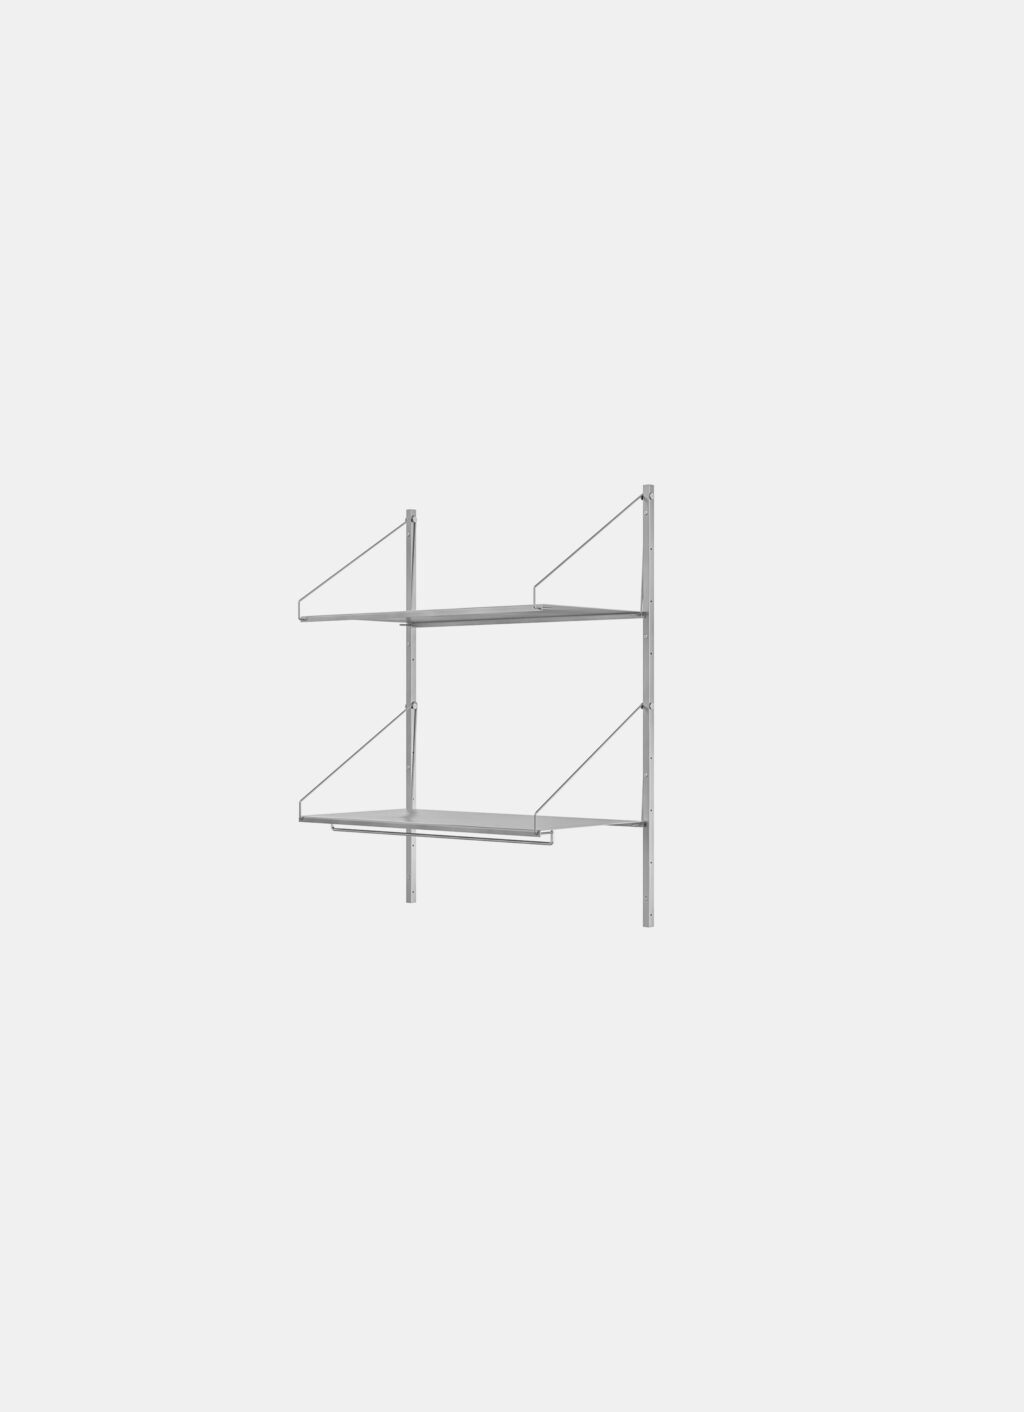 Frama - Shelf Library - Stainless Steel - H1084 - Hanger Section